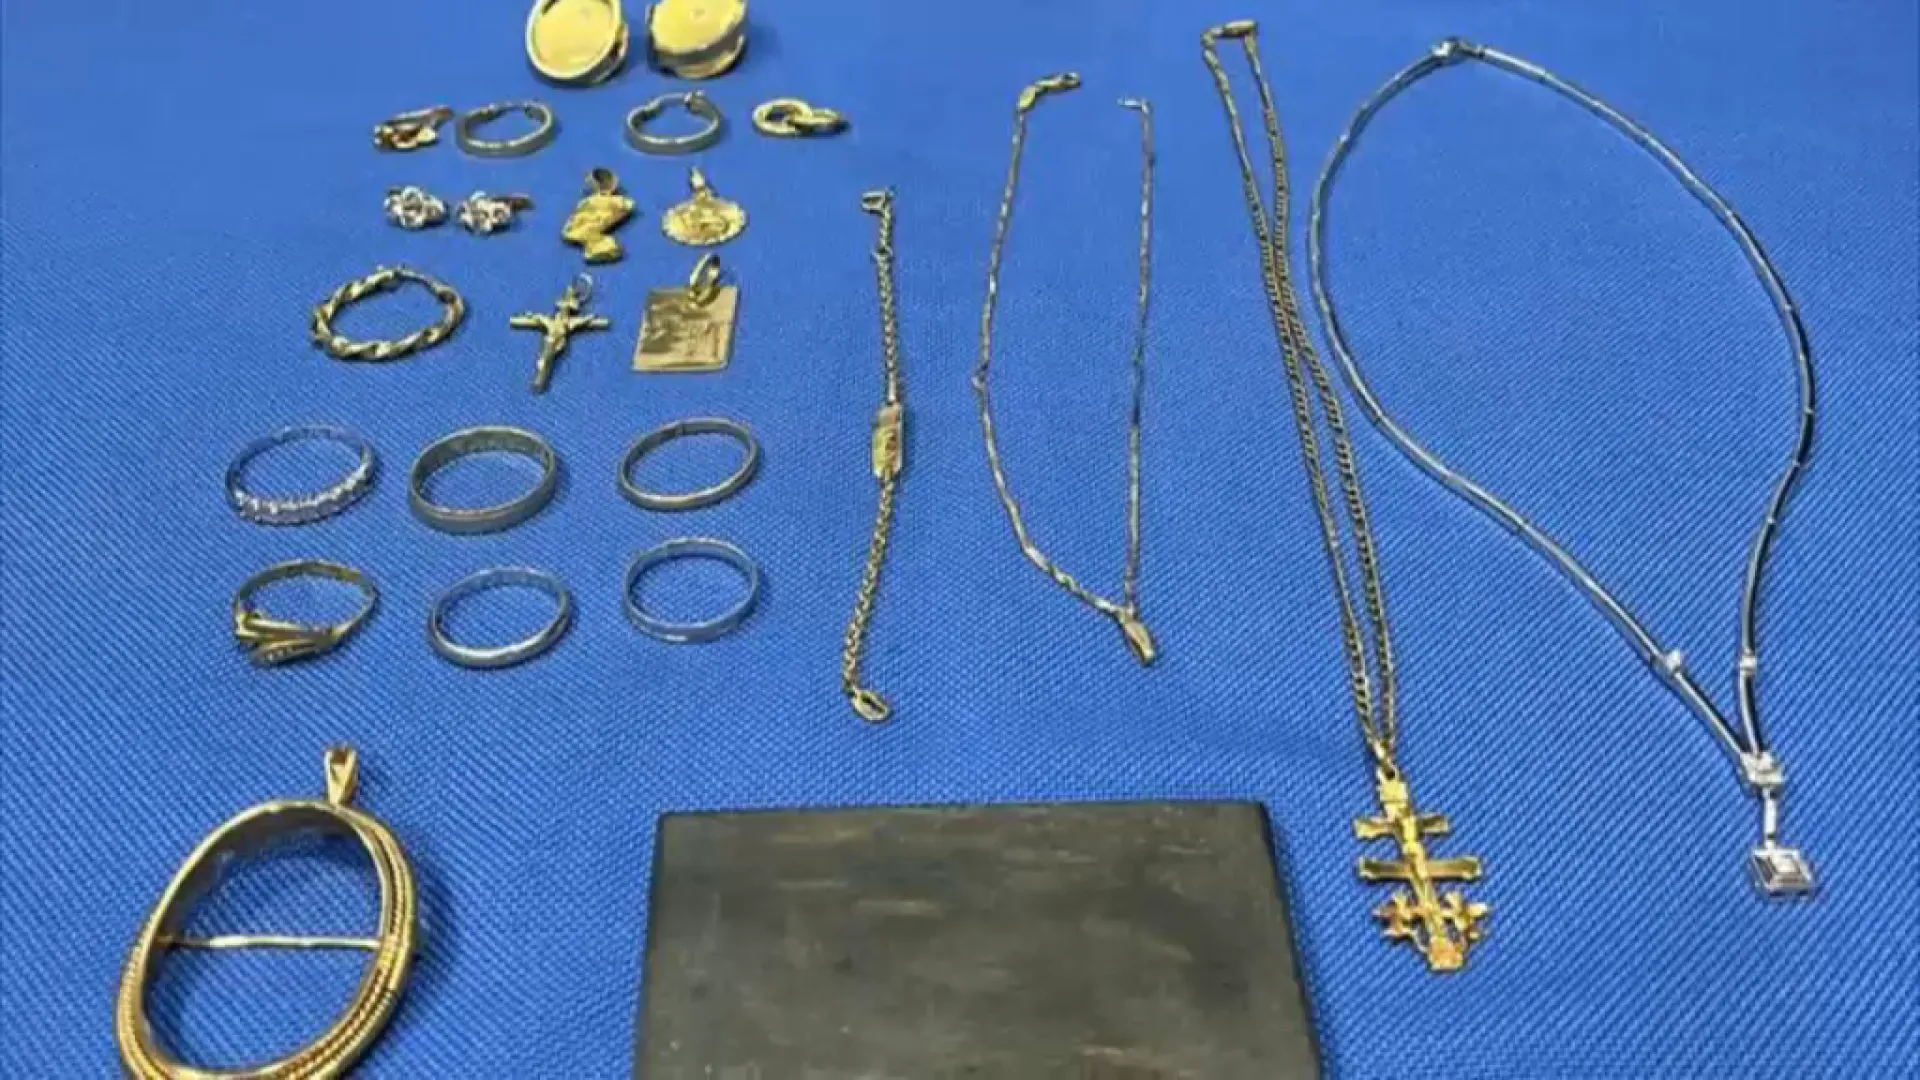 Cerquen els propietaris de les joies robades per la banda criminal desarticulada dimarts a Calvià